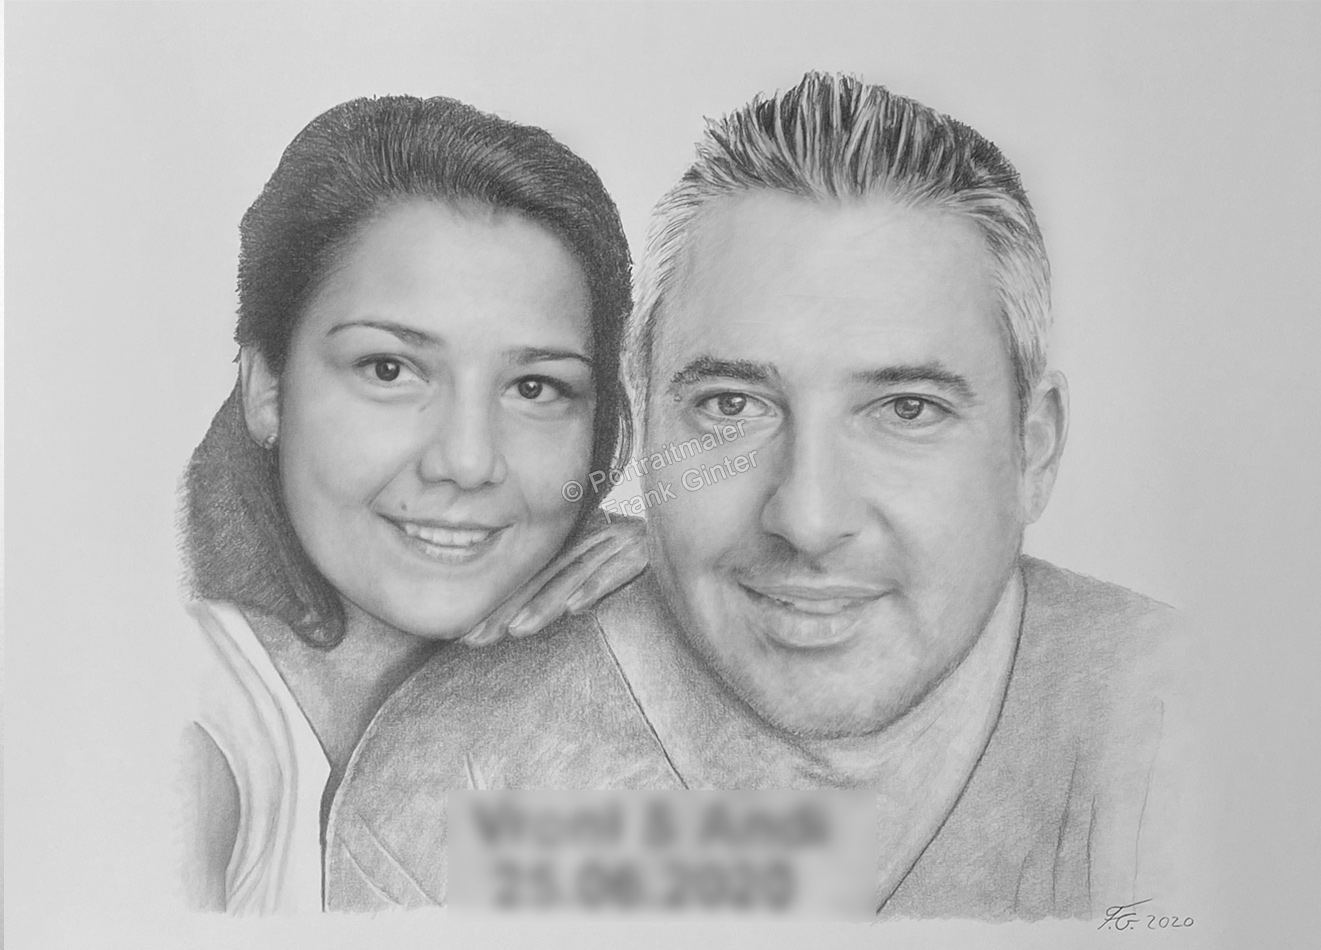 Bleistiftzeichnungen, Portraitzeichnung, eines Paares von Mann und Frau mit Bleistift gezeichnet